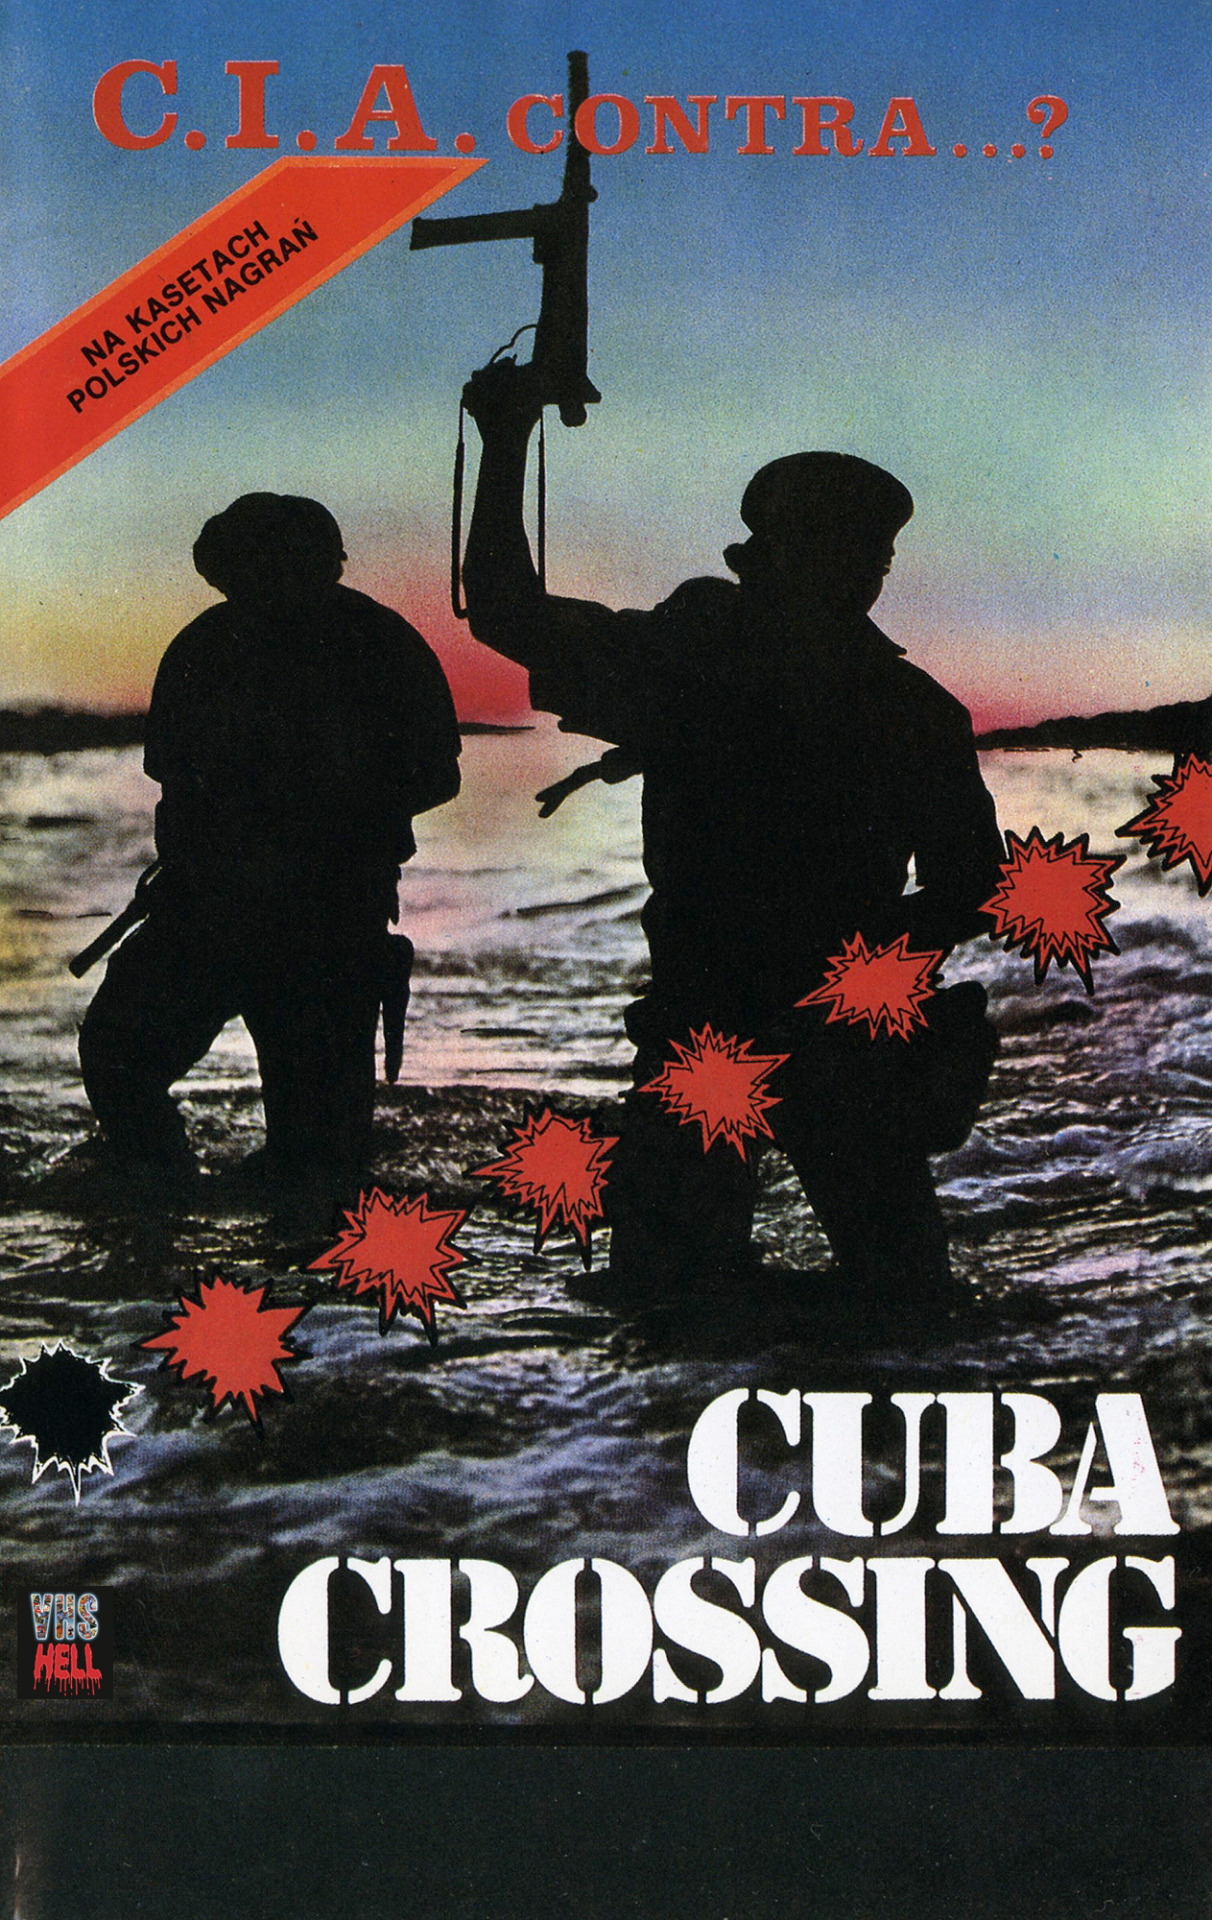 Cuba Crossing (1980) Screenshot 2 